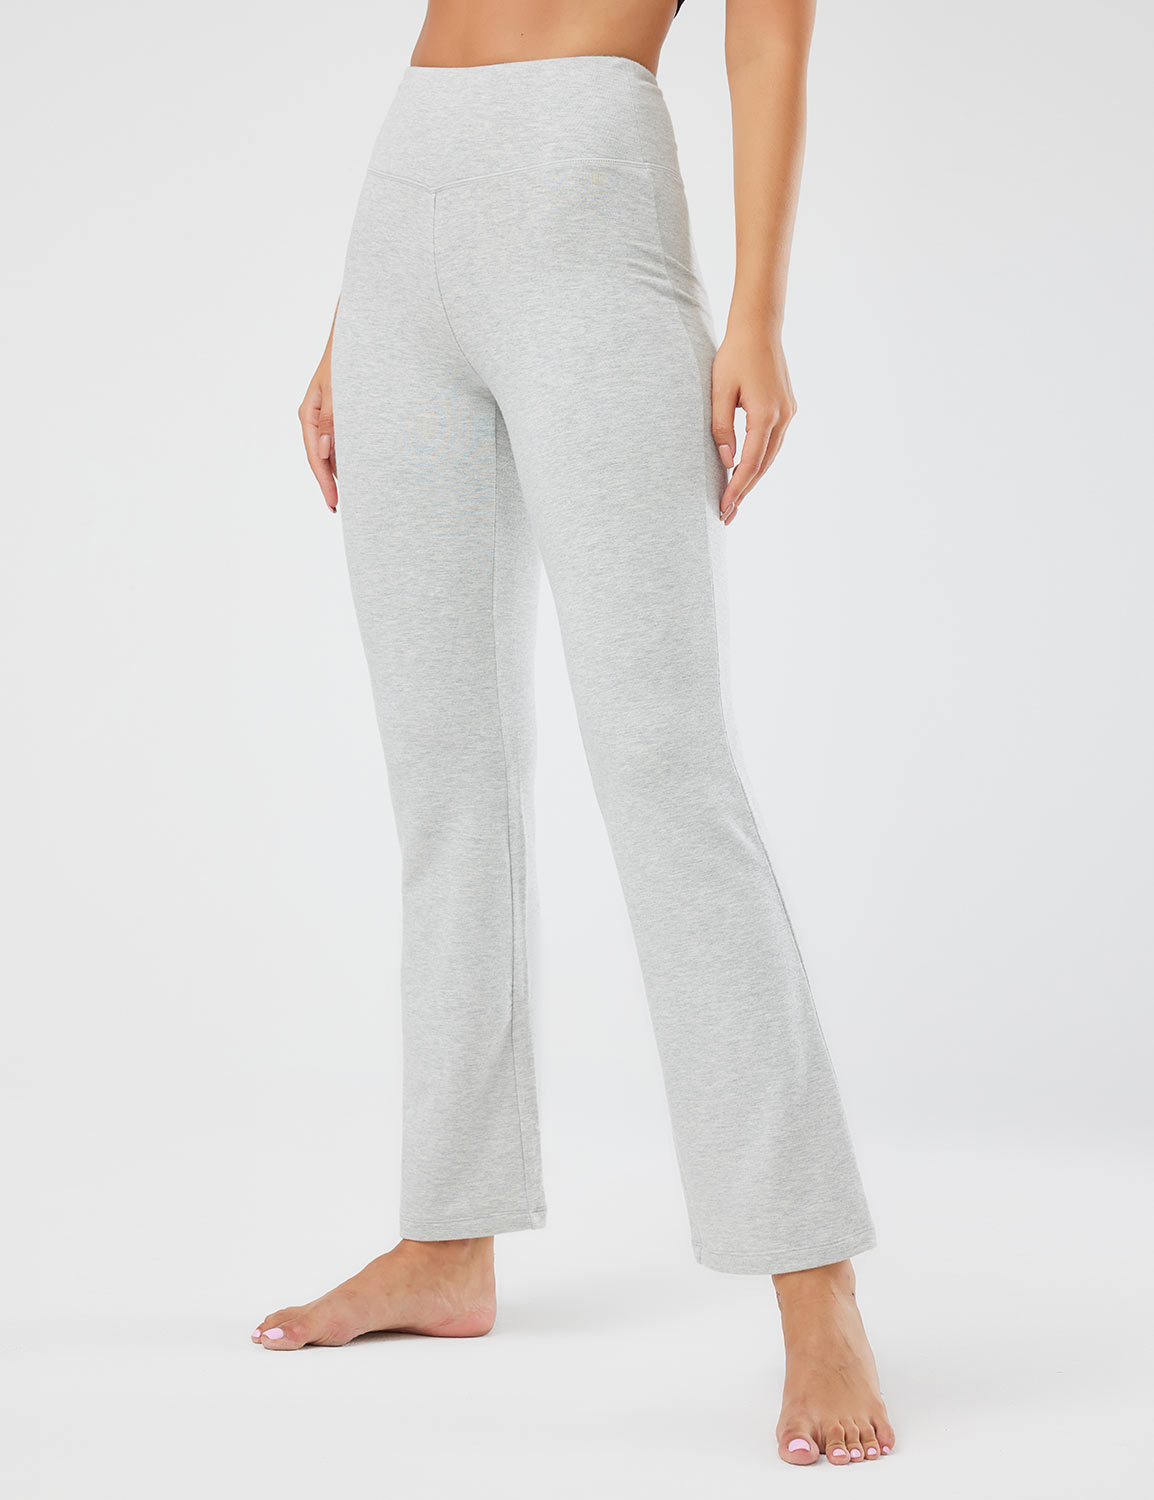 Grey Baleaf Women's Trousers